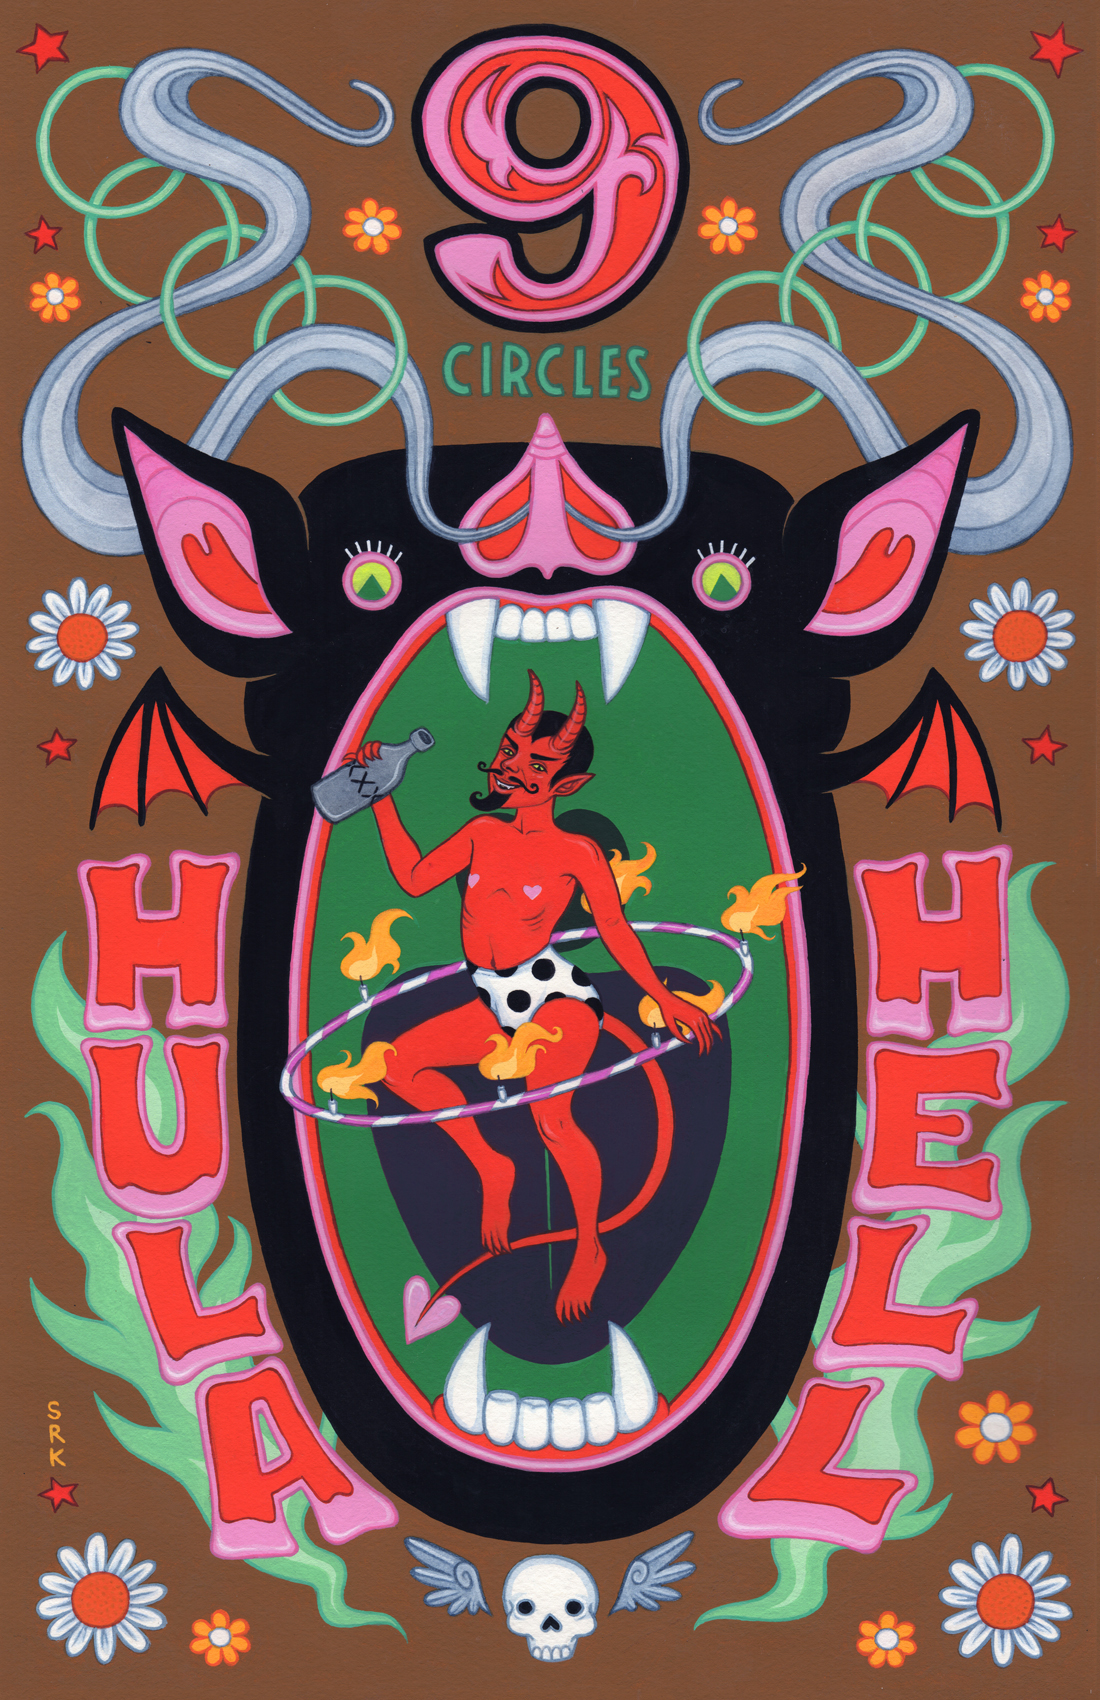 hula hoop hula hoop contest hell circles of hell circus poster hula hell devil Satan bat